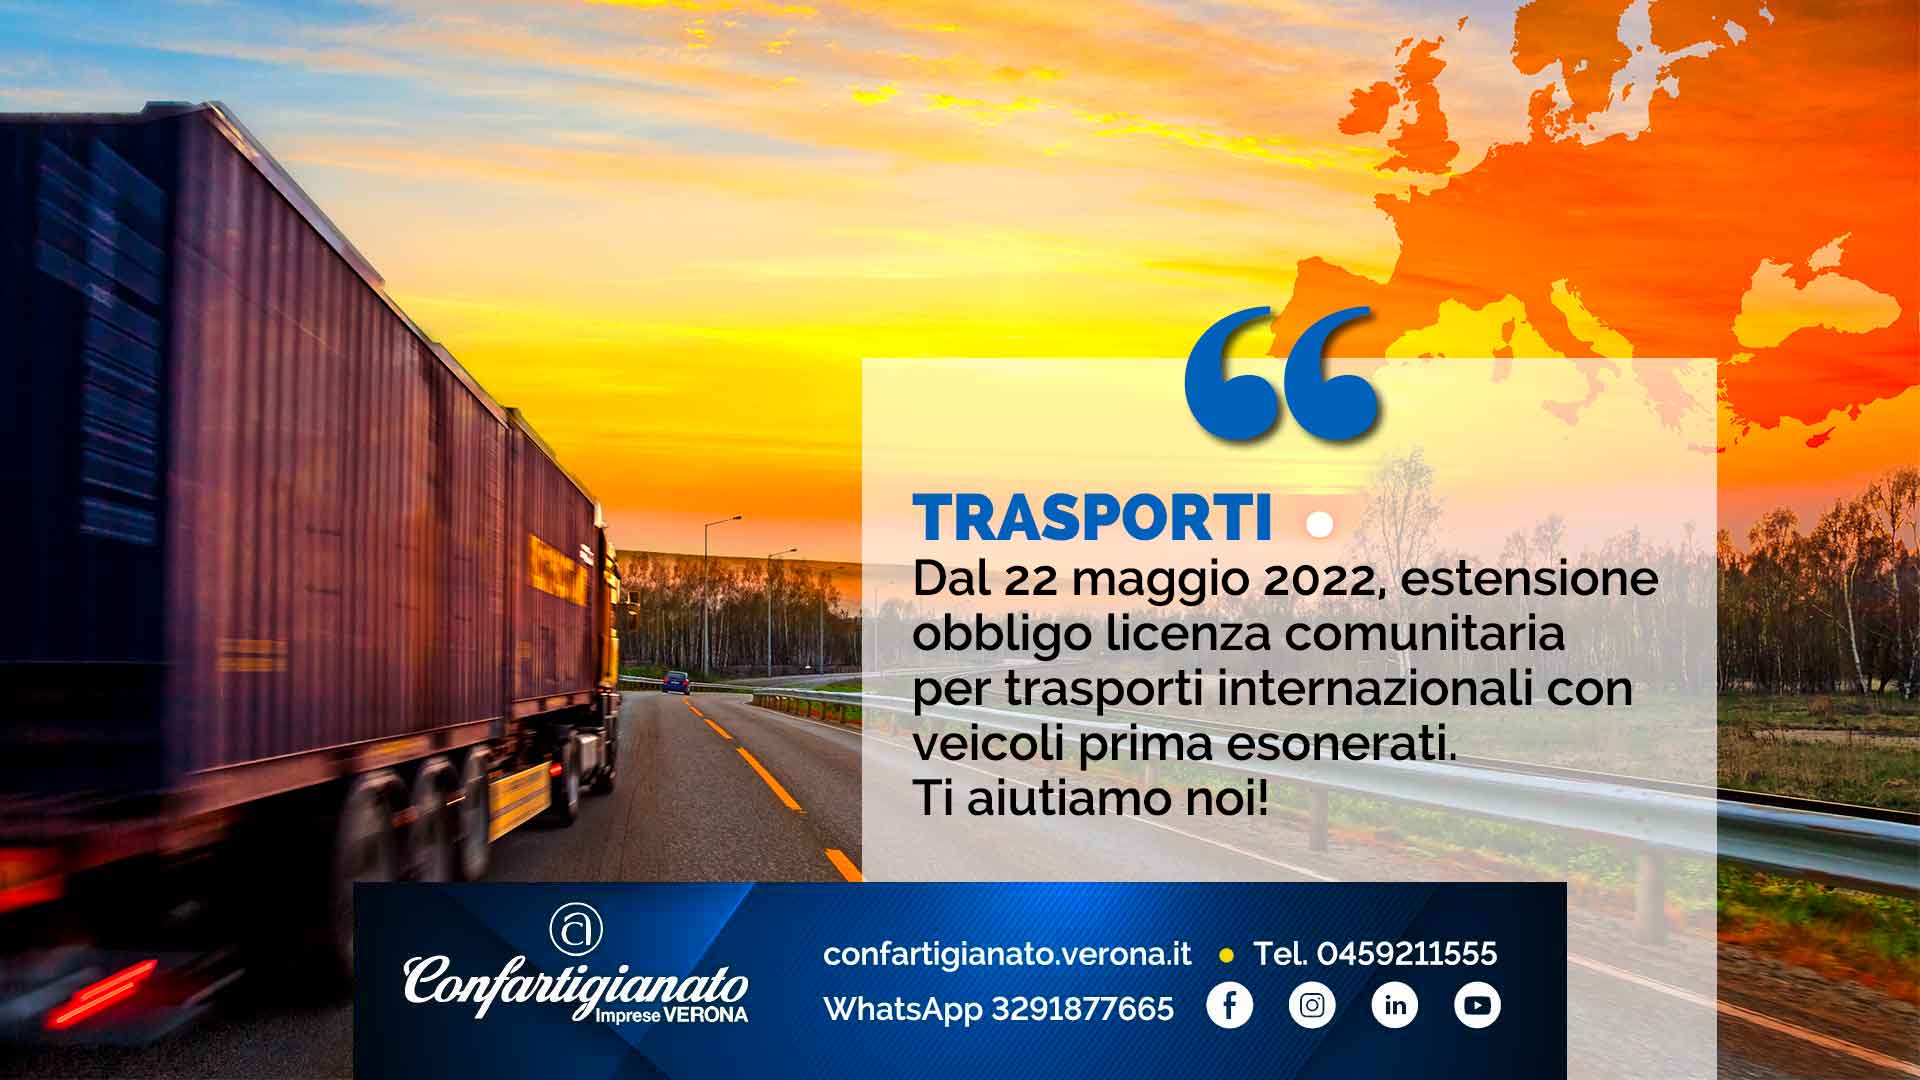 TRASPORTI – Dal 22 maggio 2022, estensione dell’obbligo della licenza comunitaria per trasporti internazionali con veicoli prima esonerati. Ti aiutiamo noi!